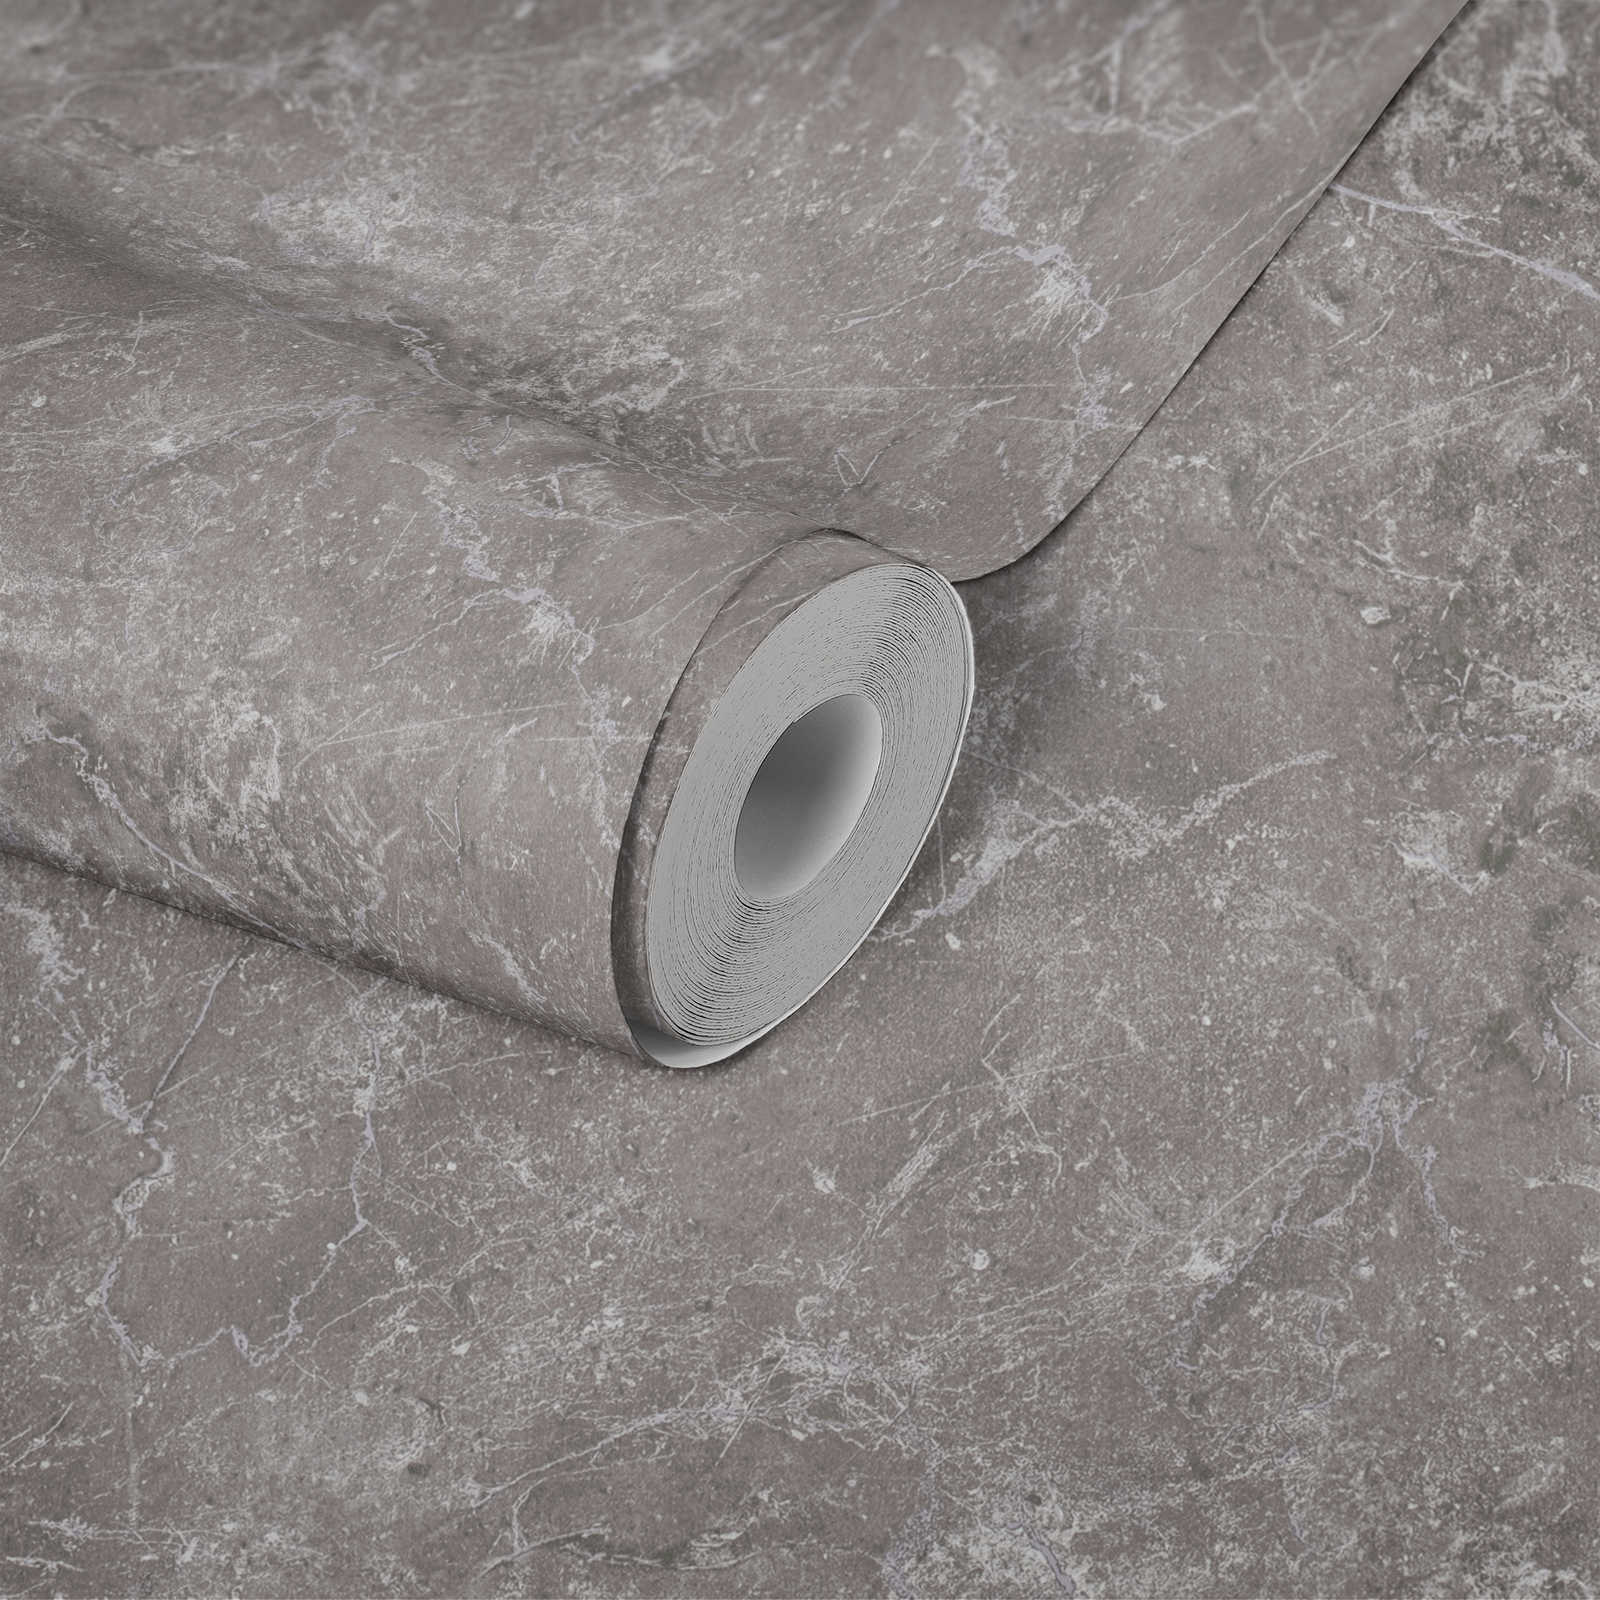             Marmor Tapete Grau Design by MICHALSKY
        